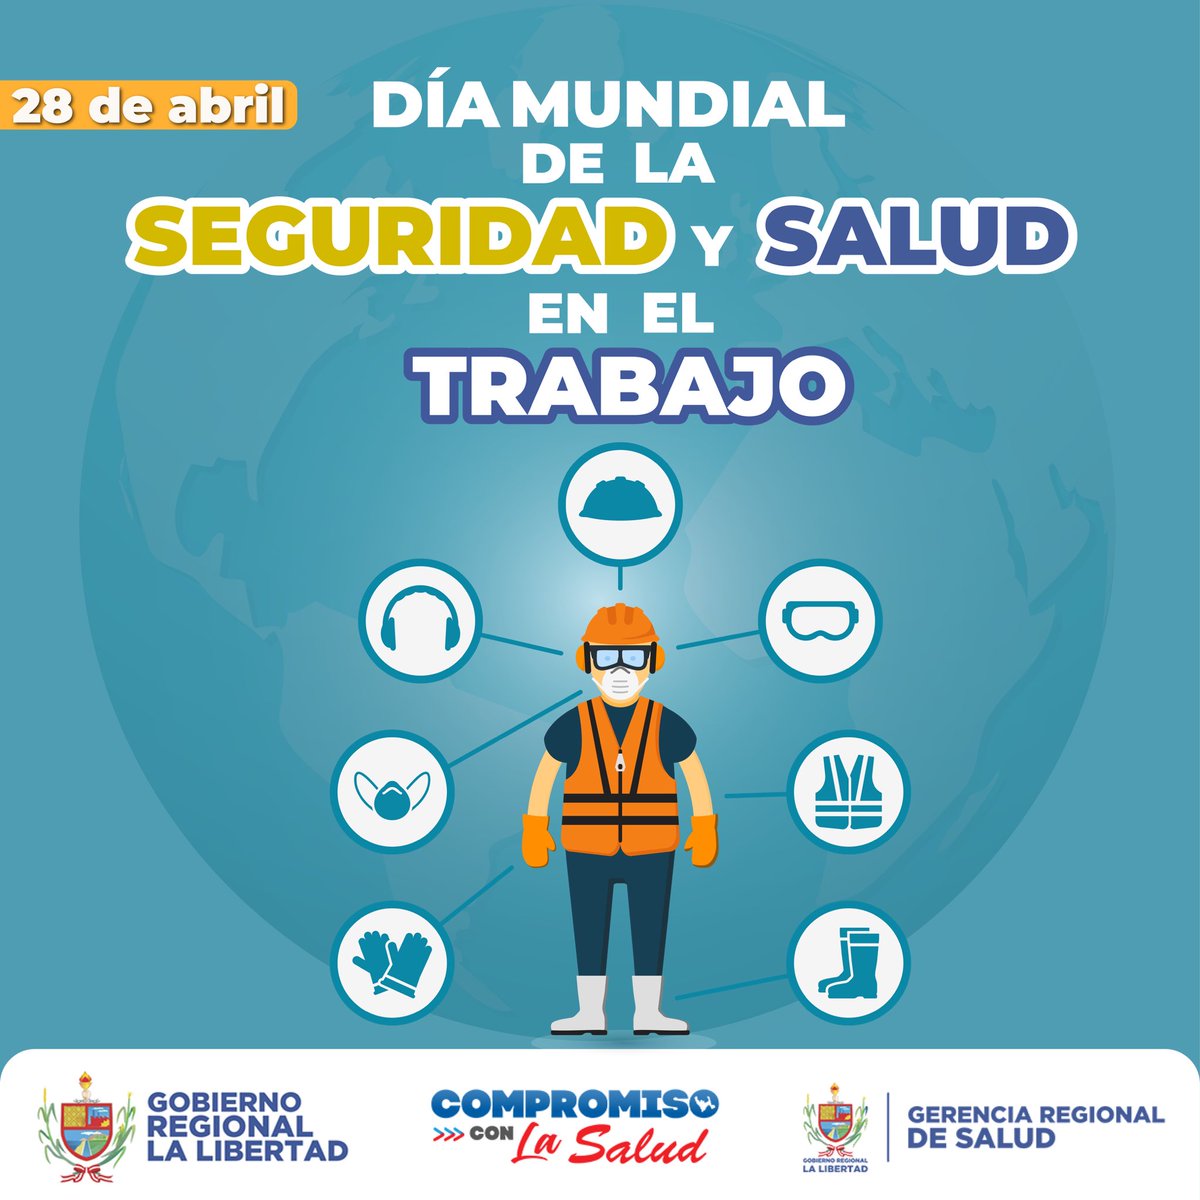 #EFEMÉRIDES | 28 de abril: Día Mundial de la Seguridad y Salud en el trabajo 👷👷‍♀️ #CompromisoConLaSalud #CompromisoConLaLibertad